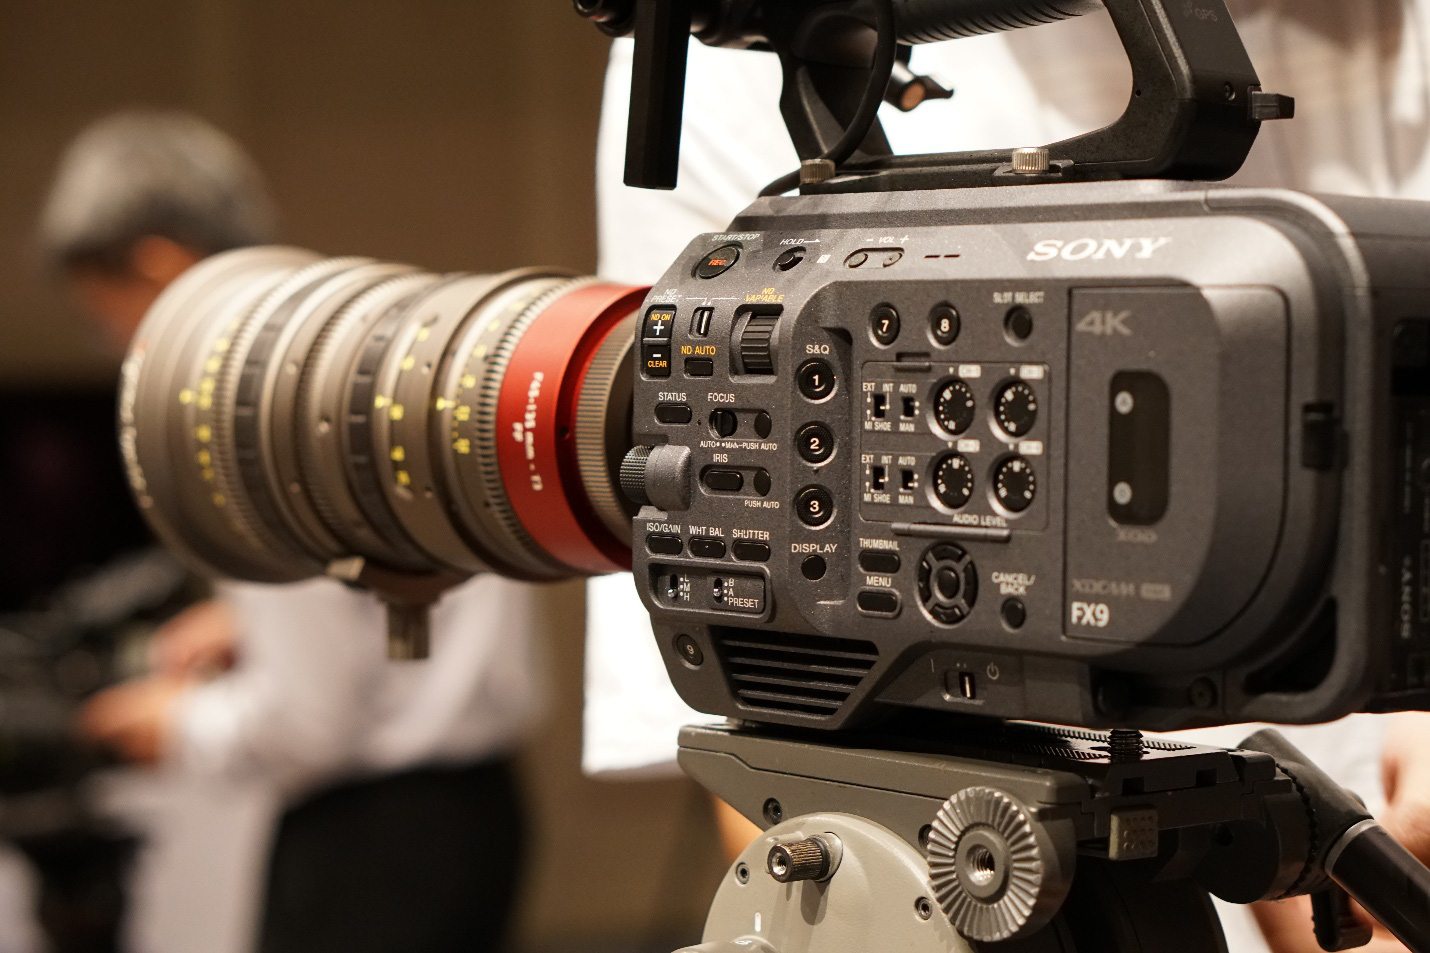 Làm phim dễ dàng với máy quay Sony PXW-FX9 đạt chuẩn “cận máy quay ...